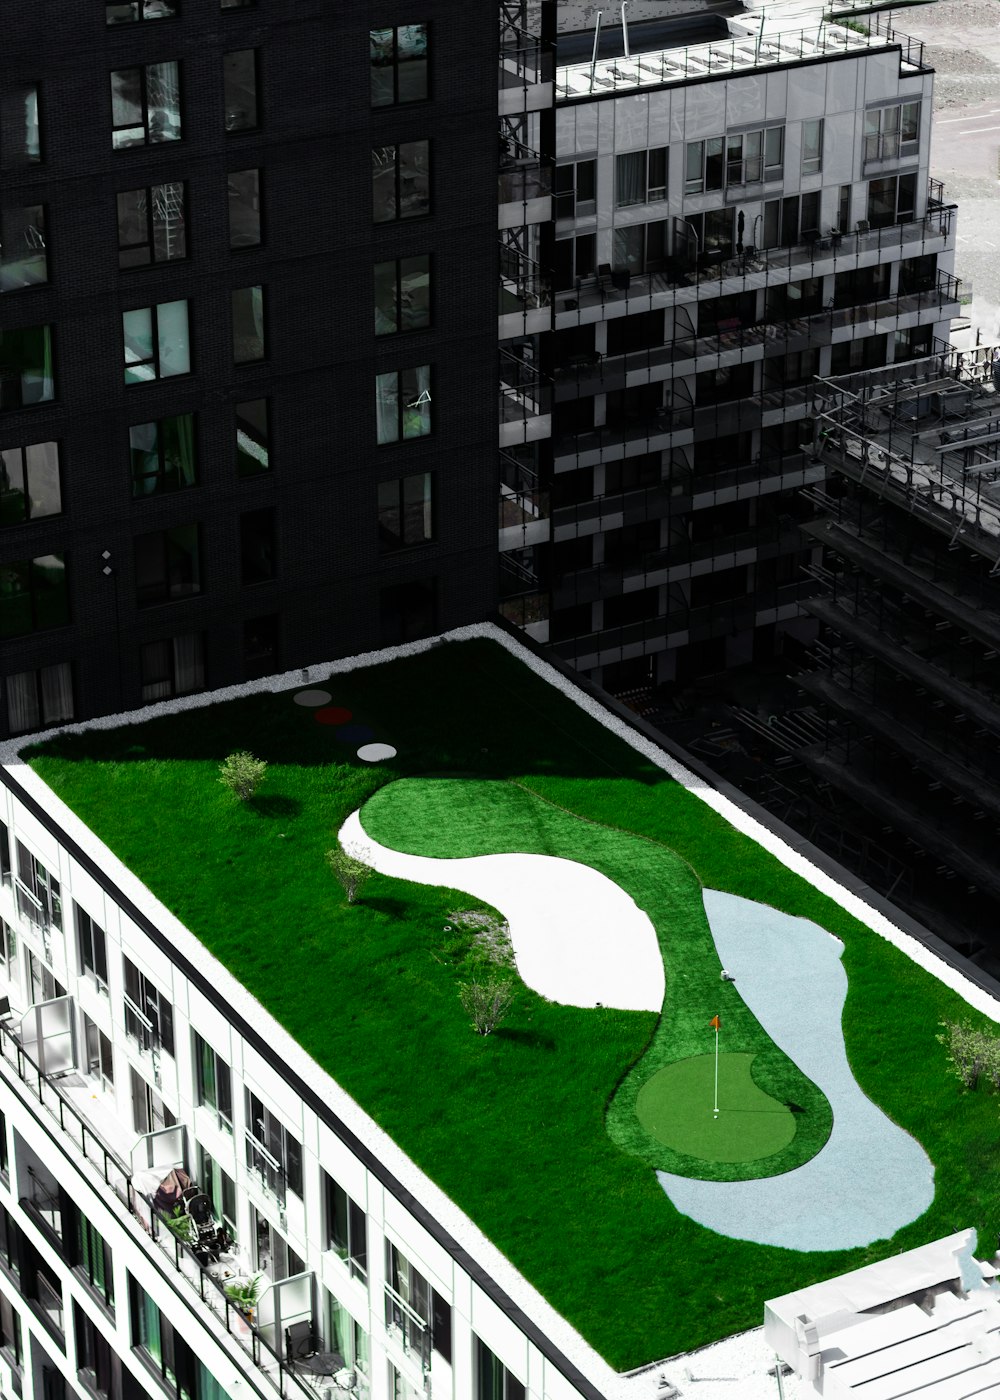 Terrain de golf au sommet du bâtiment pendant la journée